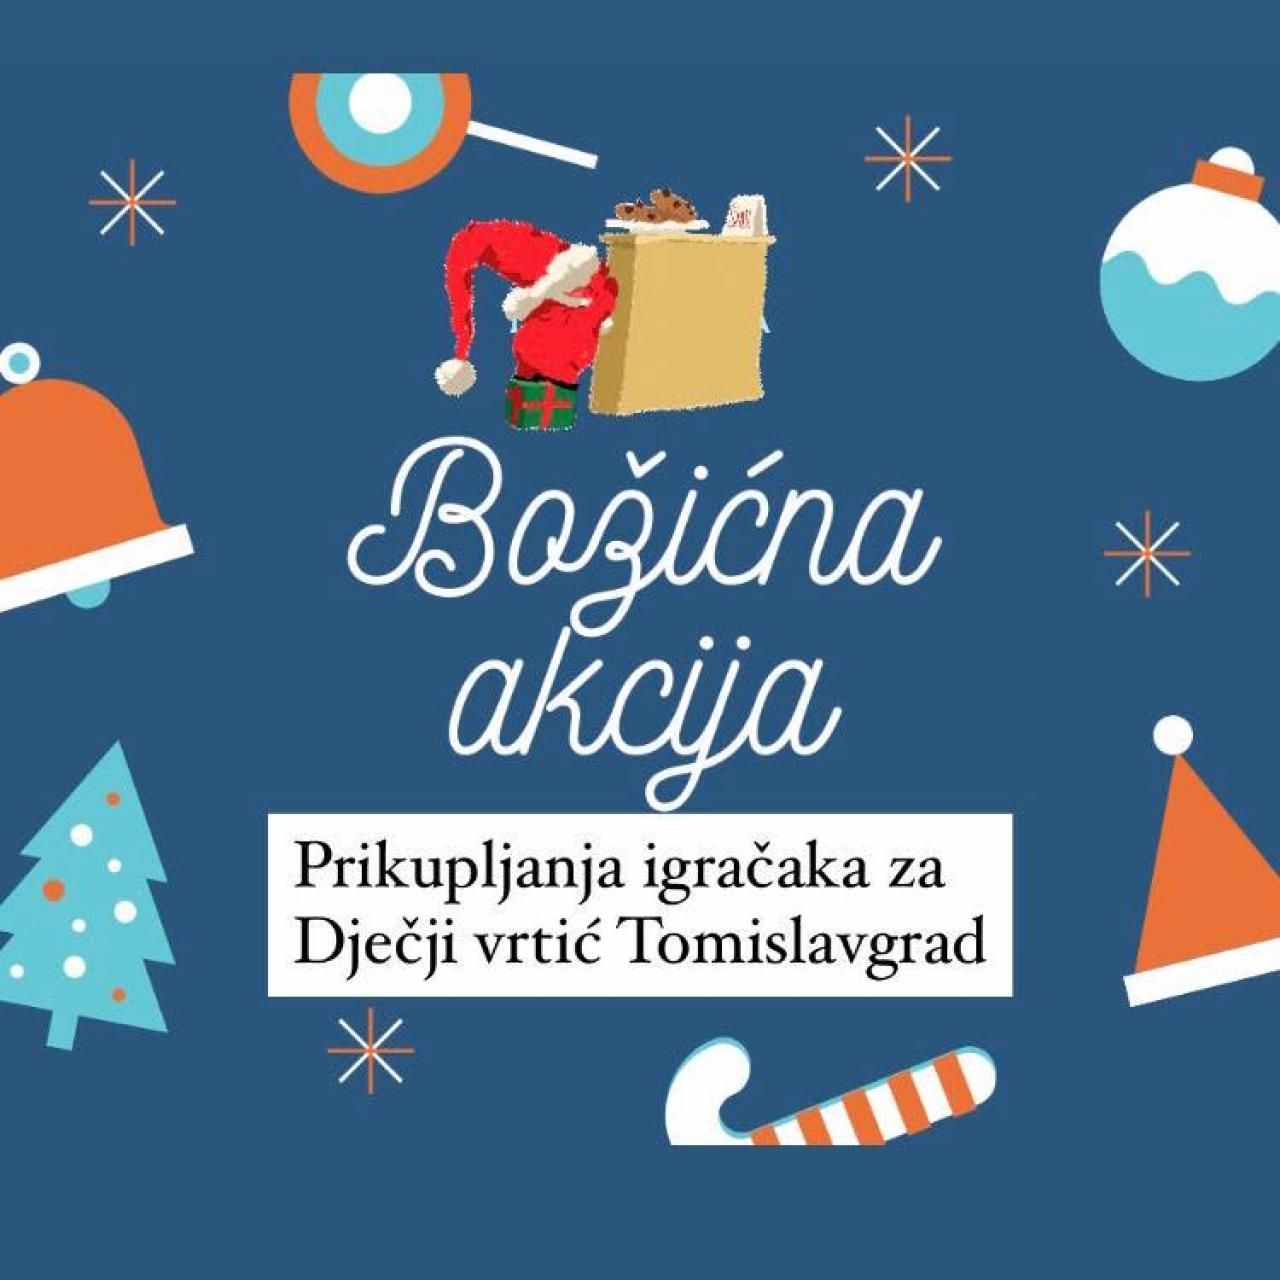 Božićna akcija u Tomislavgradu - Božićnom akcijom prikupljene igračke za Dječji vrtić u Tomislavgradu